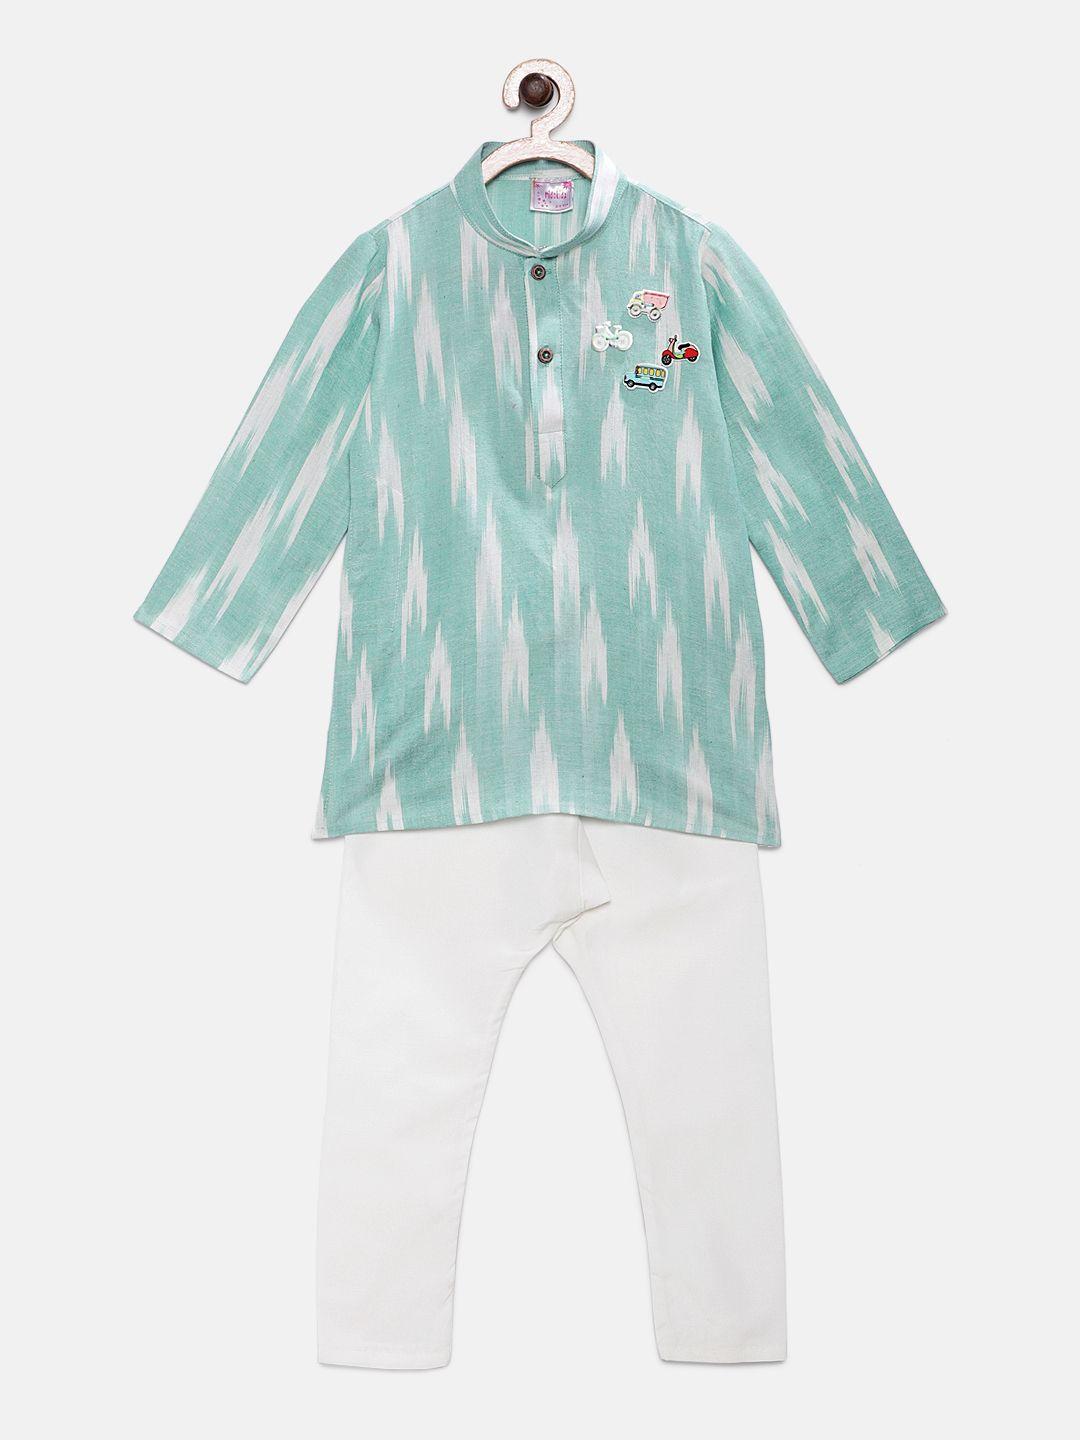 ridokidz boys sea green & white printed kurta with pyjamas